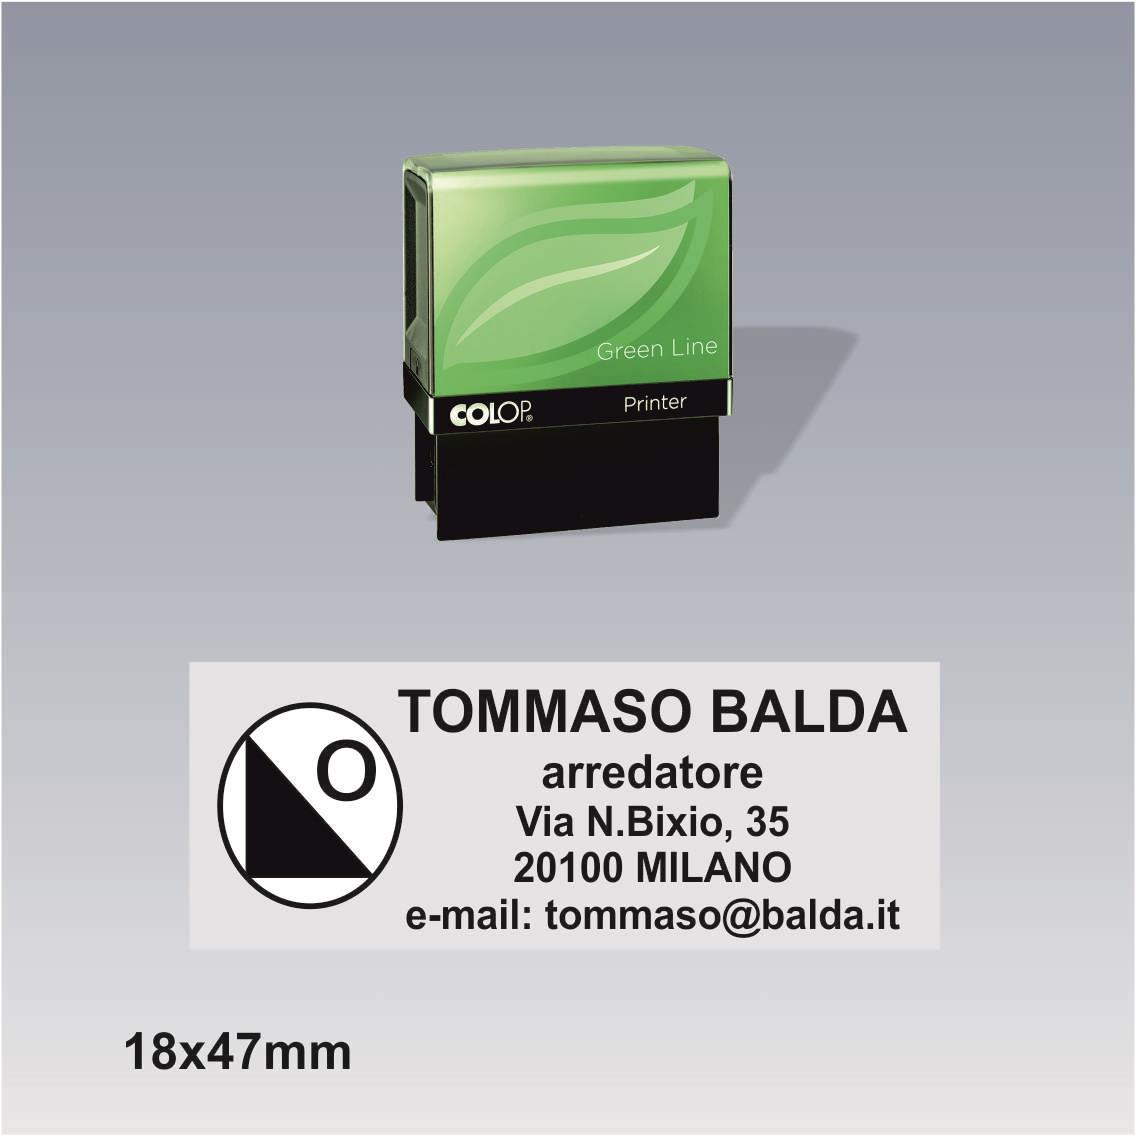 Timbro Autoinchiostrante Colop printer 30 g7 green line